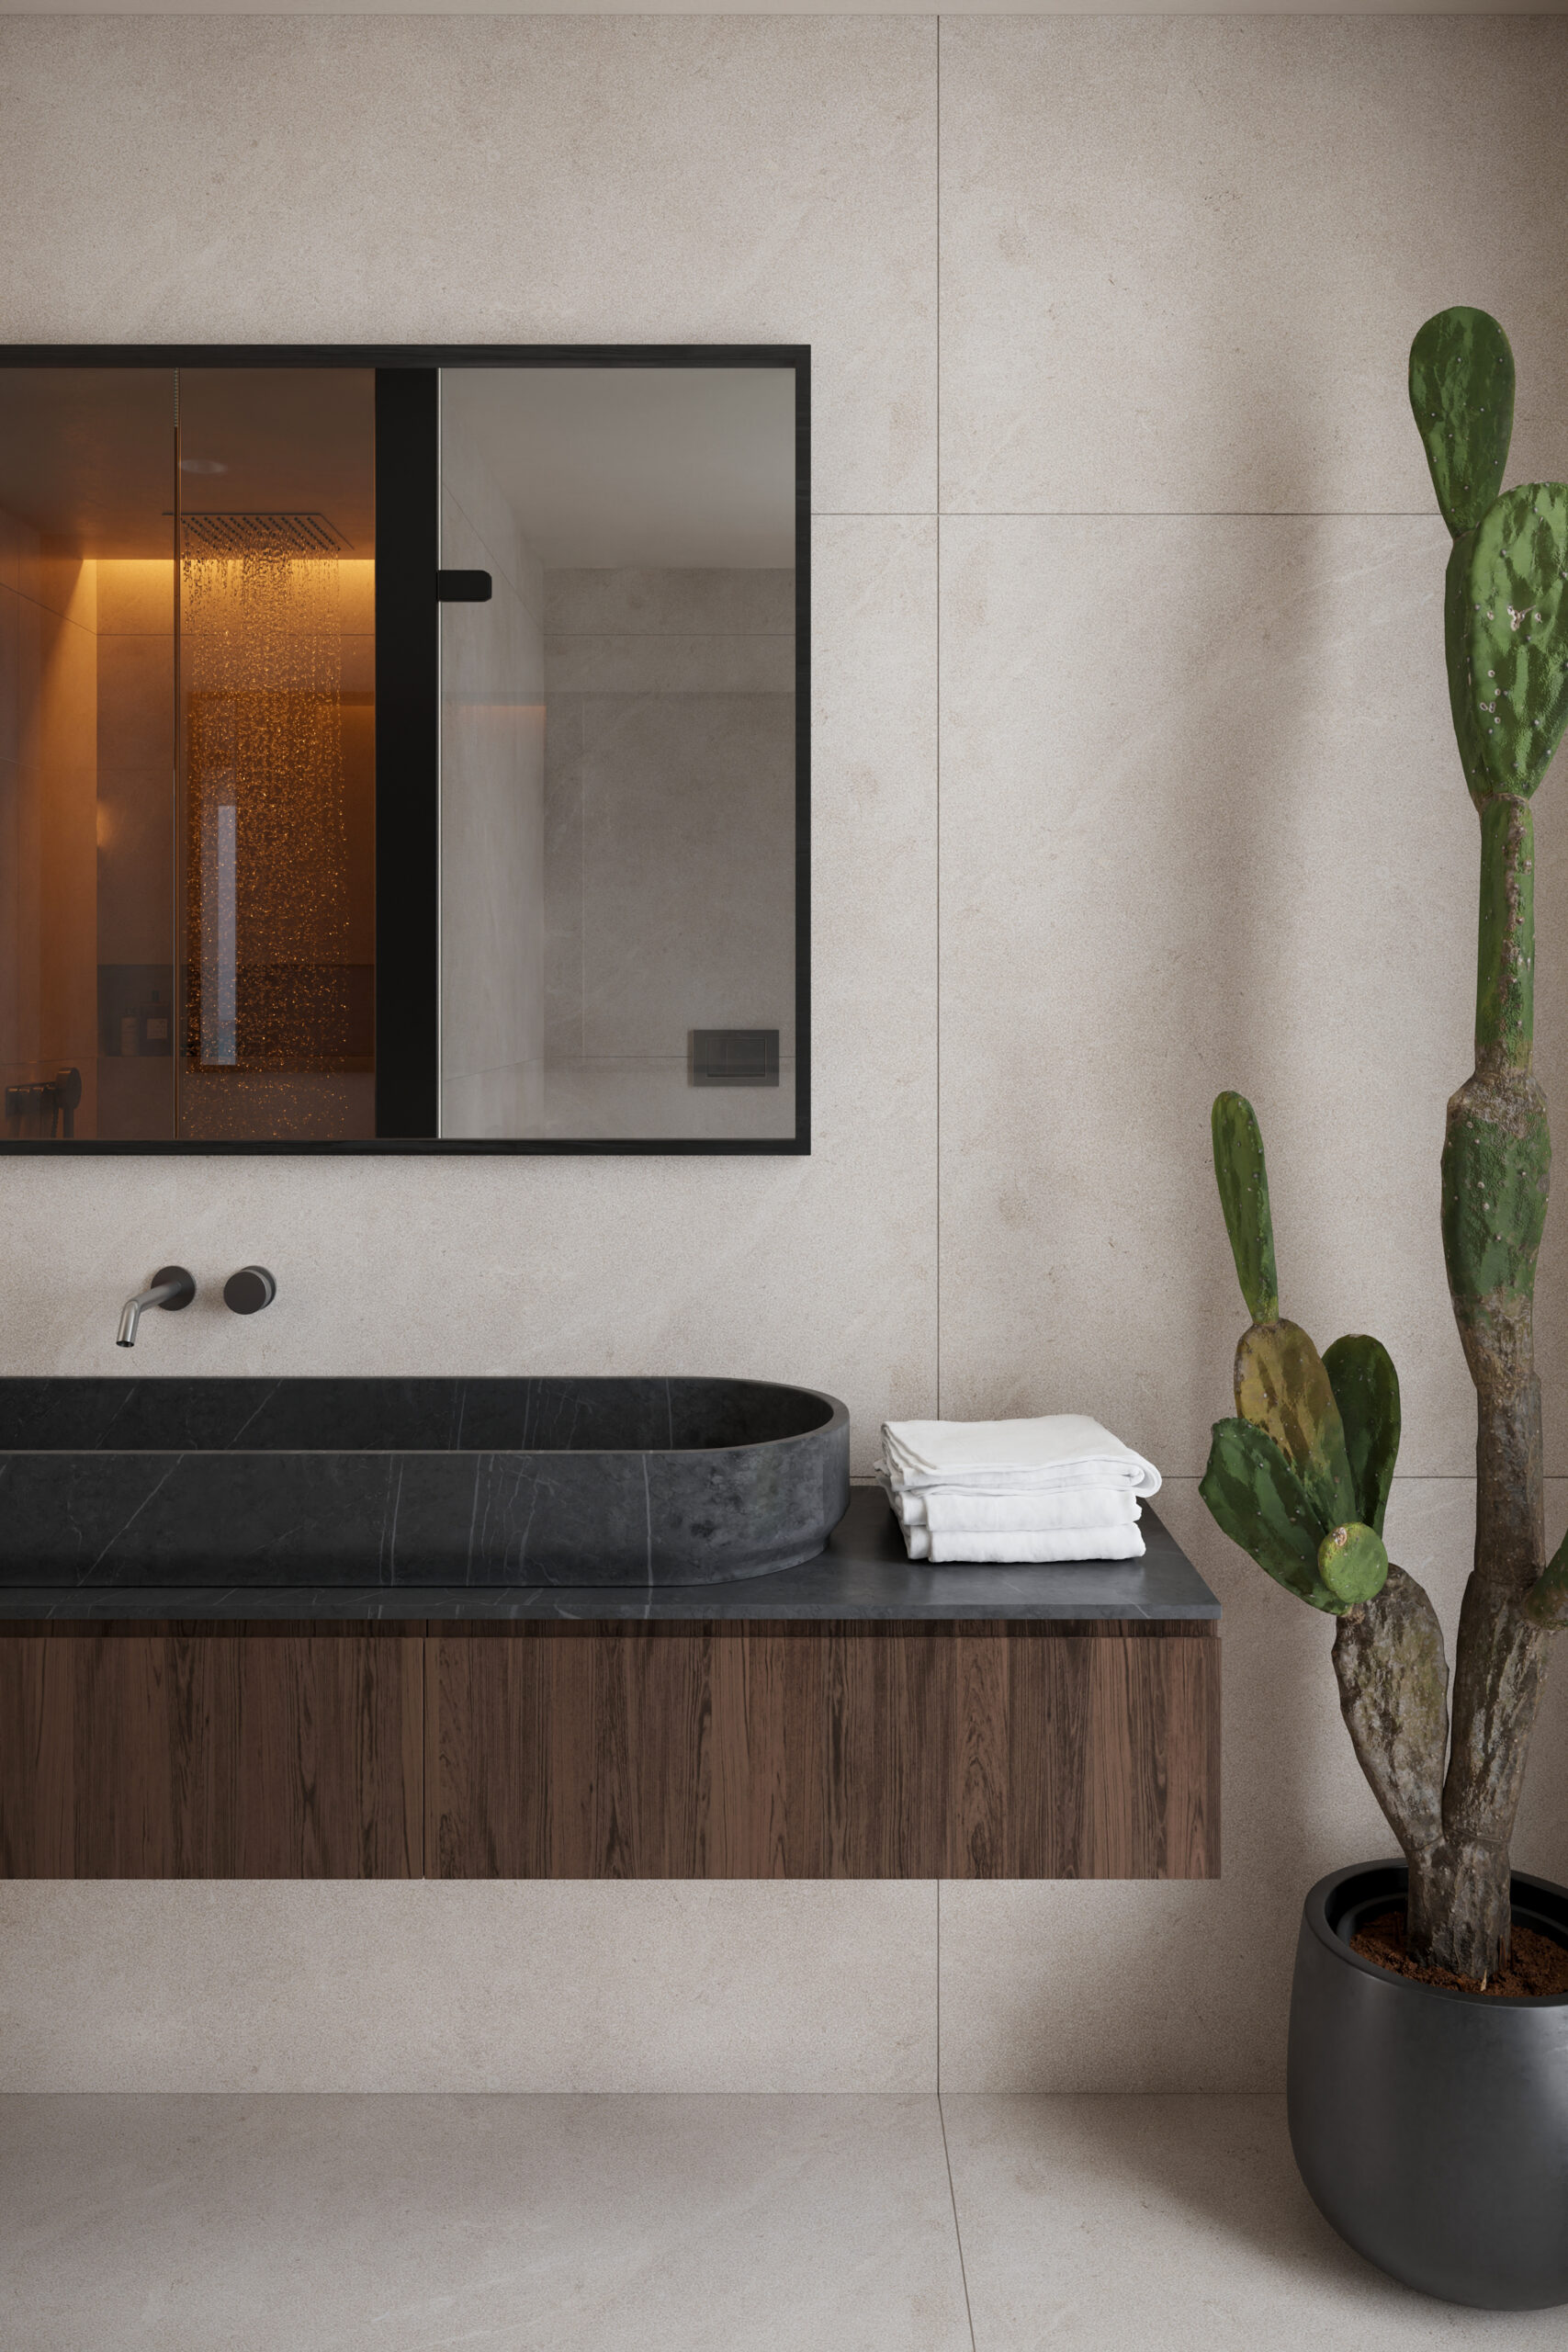 Modernes Badezimmer in einer Luxuswohnung, Spiegel und Wandschrank